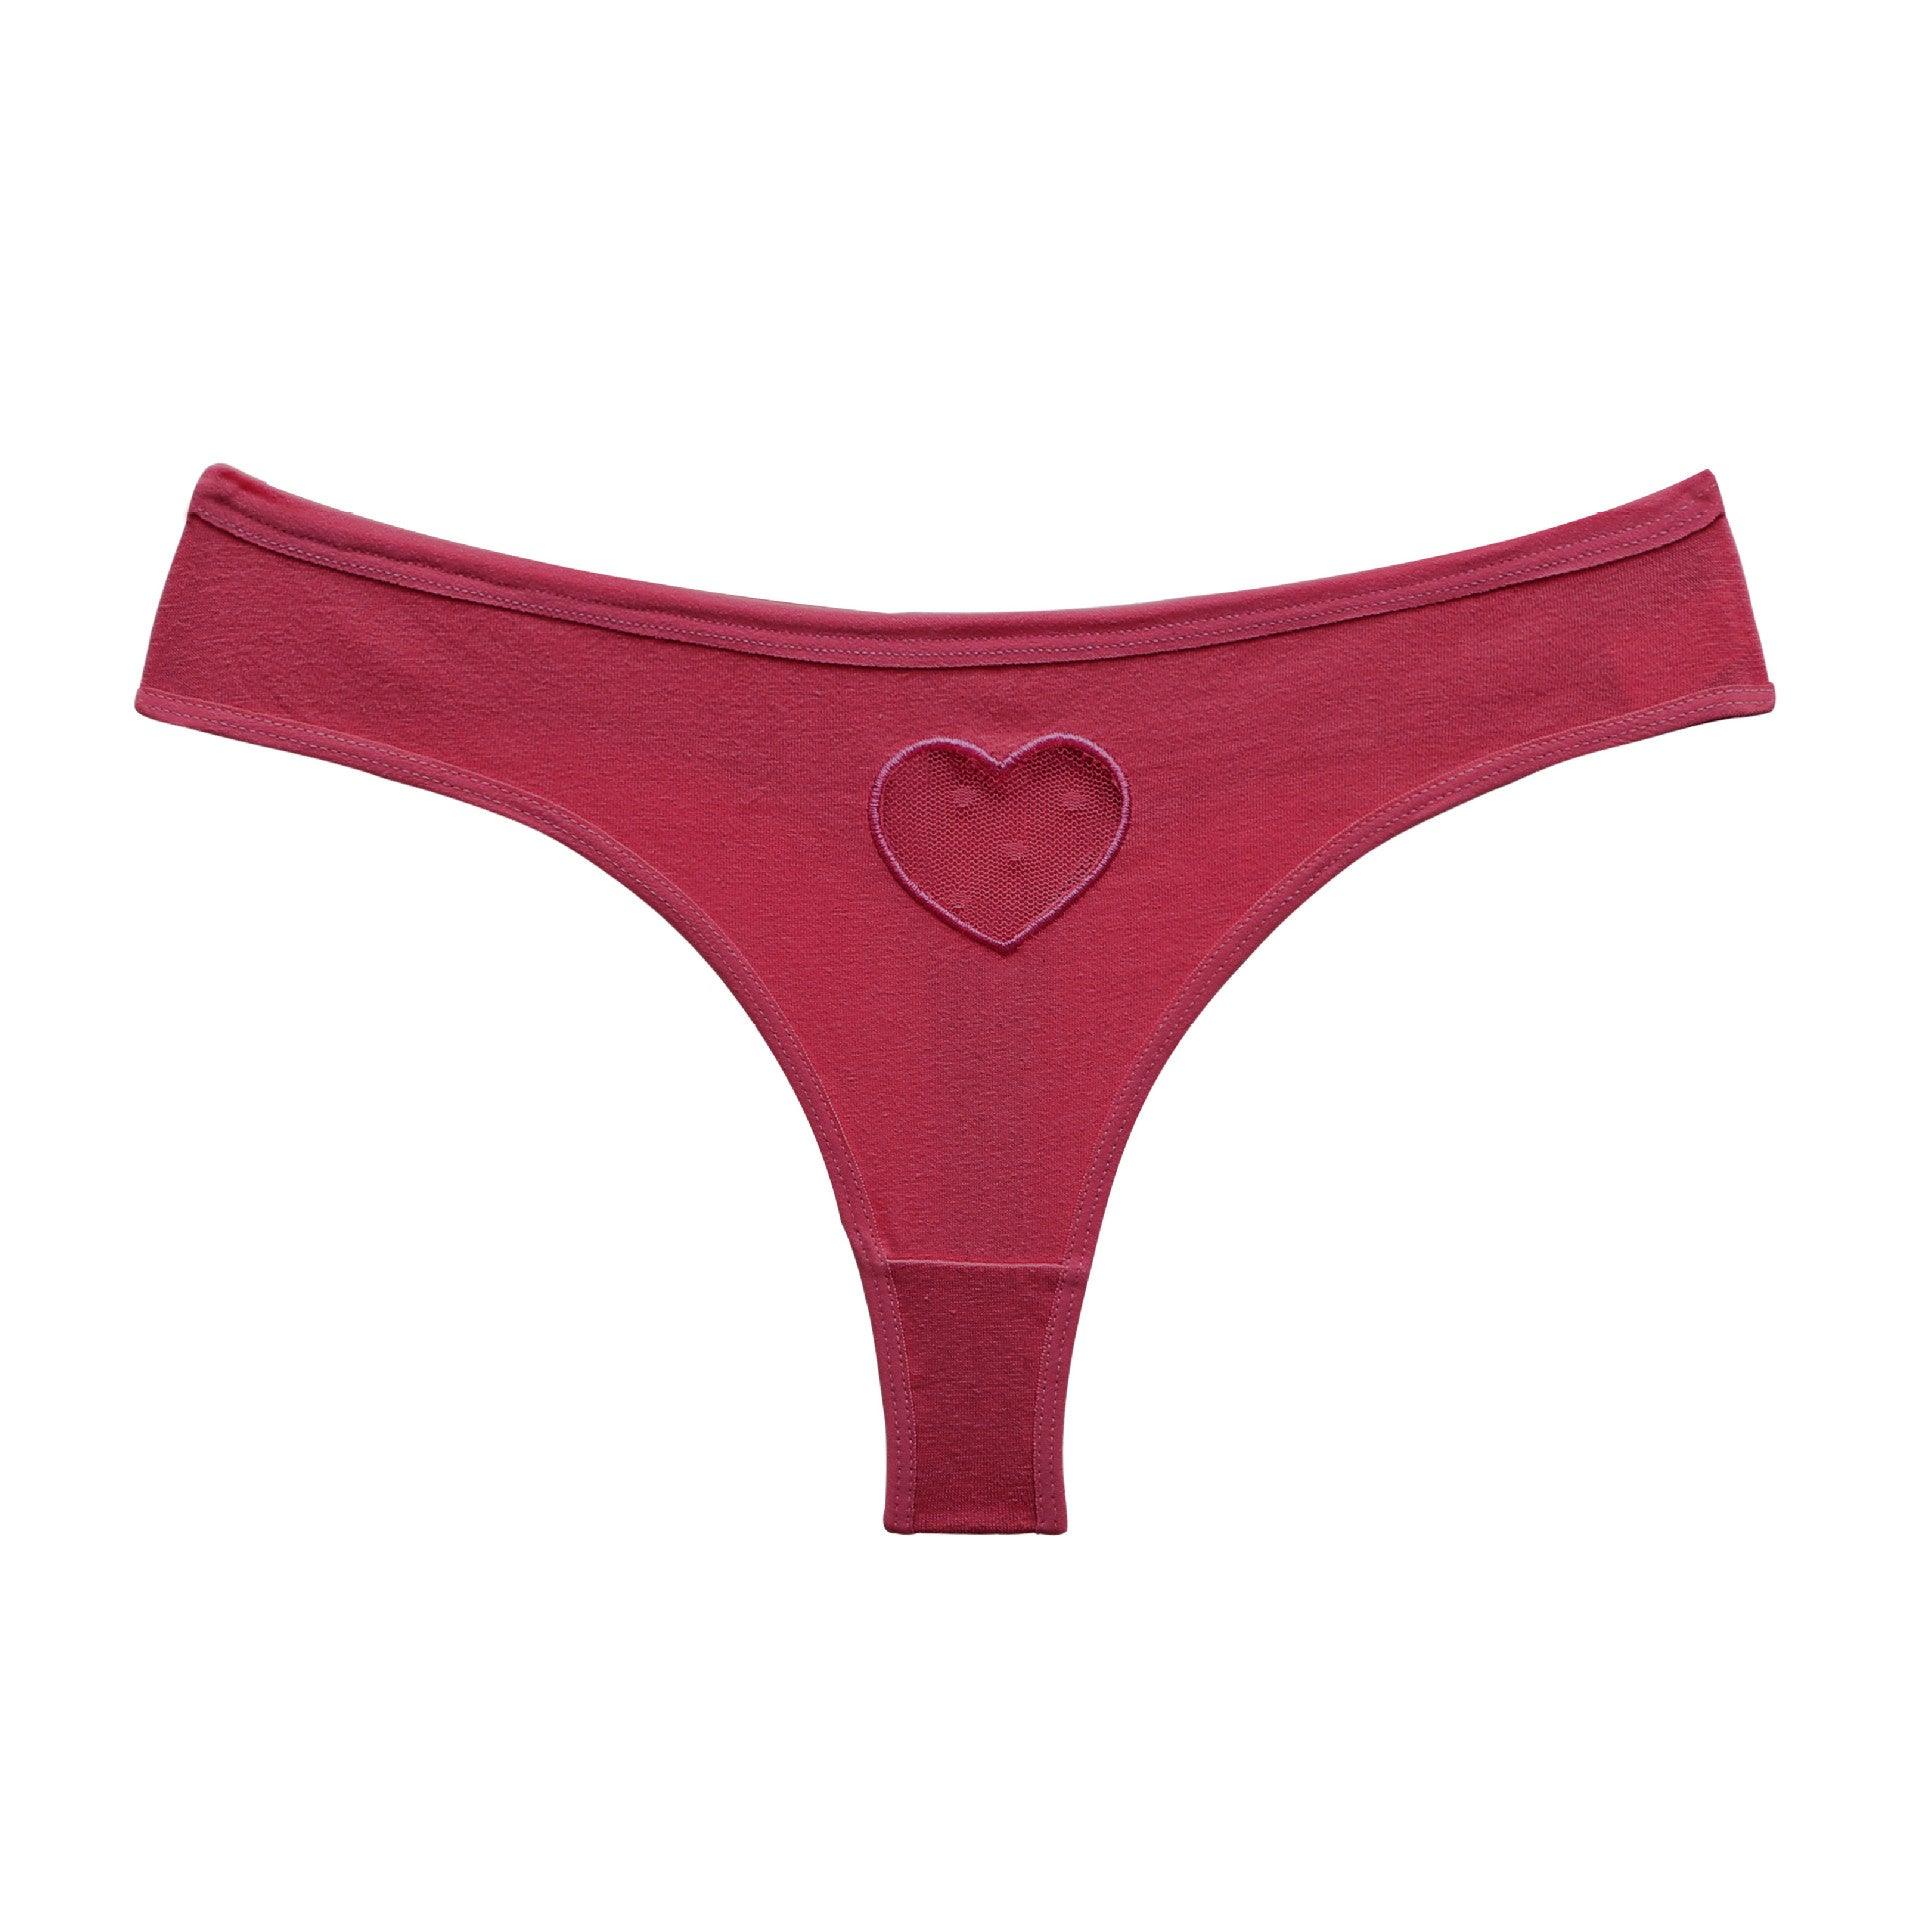 Lace Heart Cutout Bikini - ForVanity underwear, women's lingerie Underwear